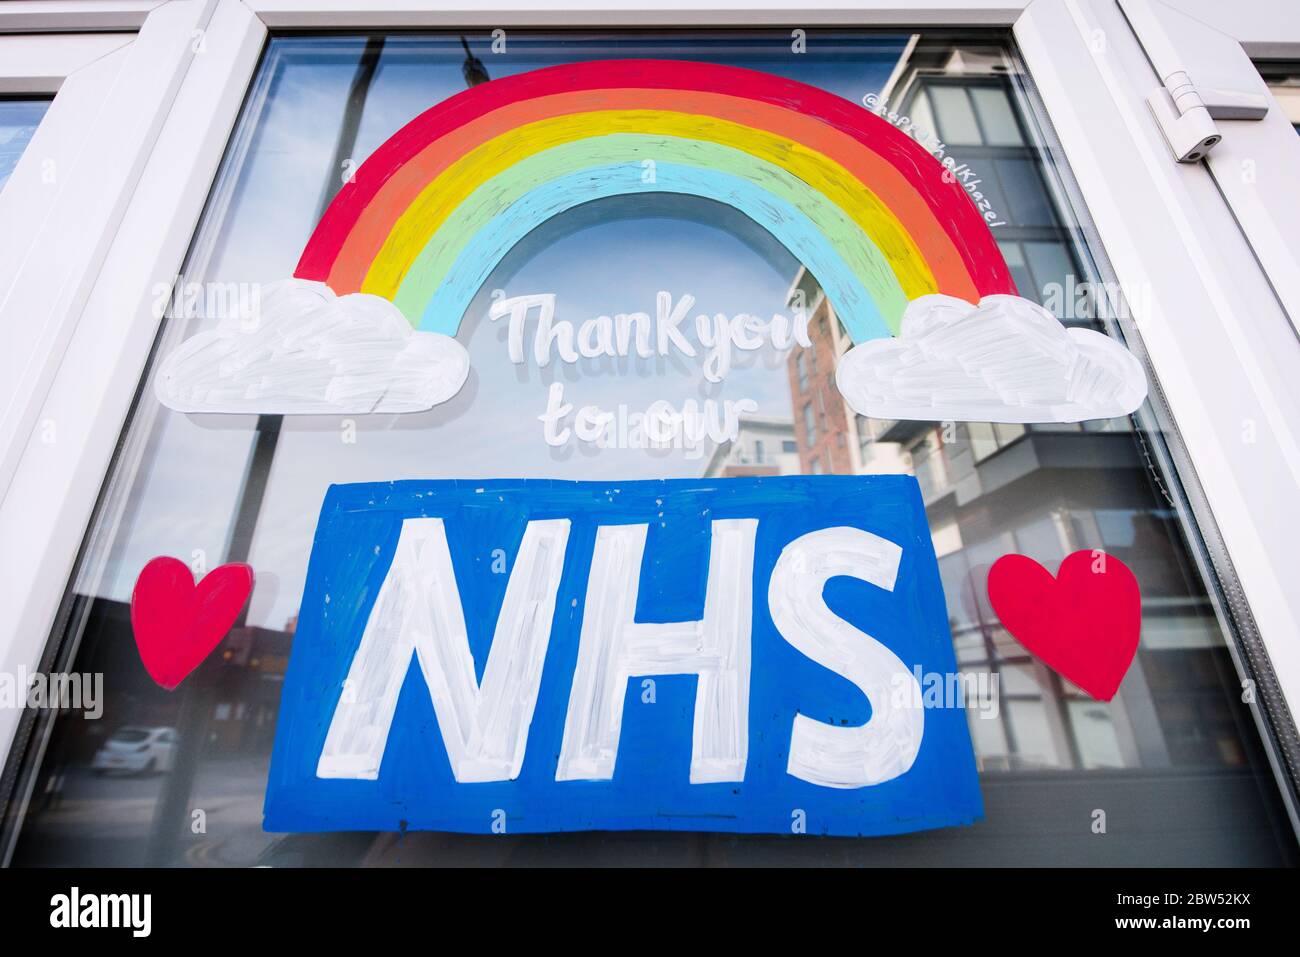 Des fenêtres récemment peintes, Merci NHS et un arc-en-ciel ont été peints sur un front de boutique à Manchester pour remercier tout le personnel de première ligne NHS. Banque D'Images